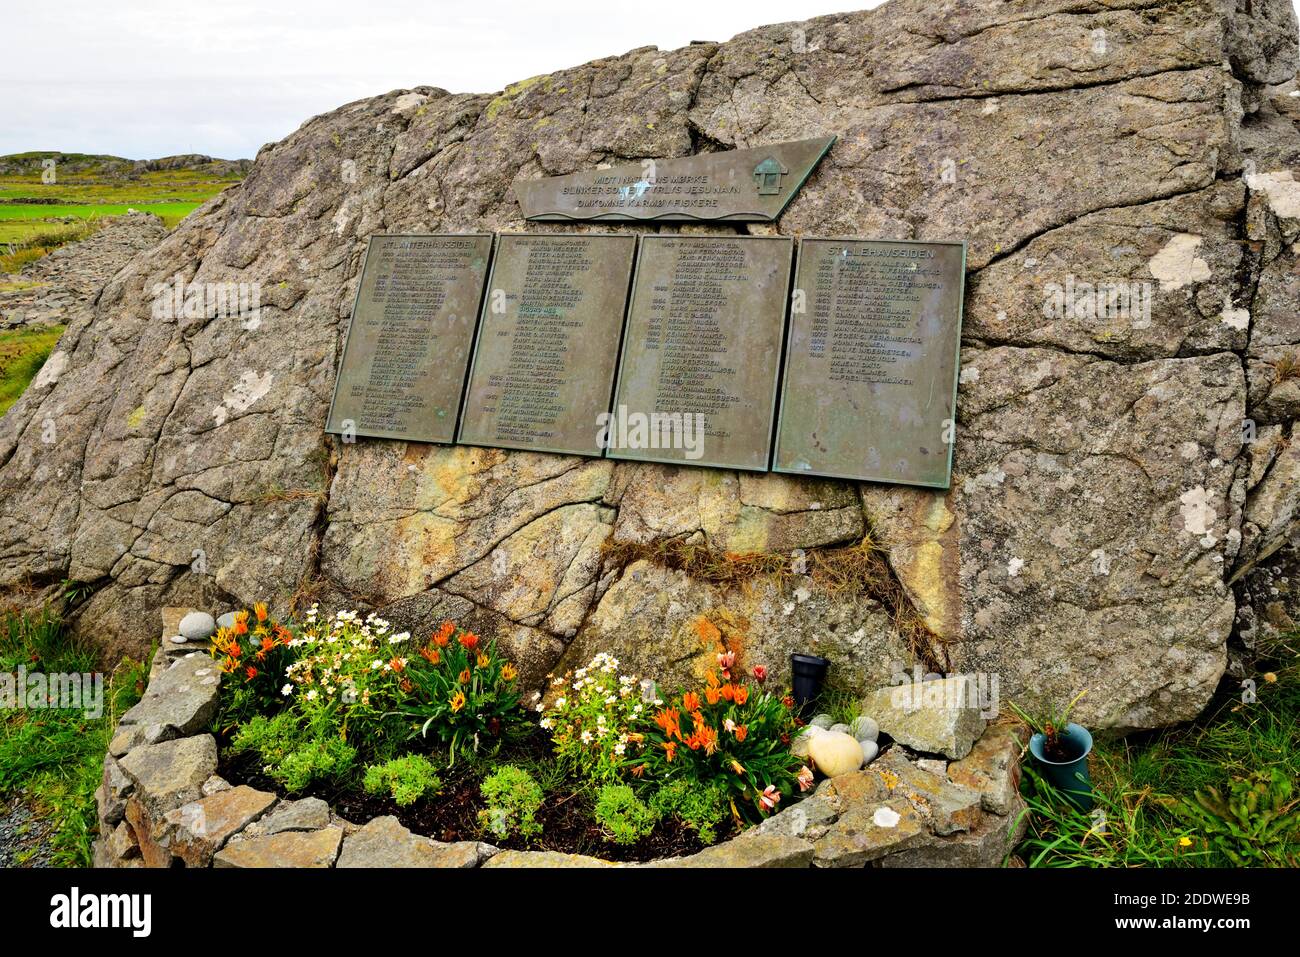 Placa conmemorativa en el monumento conmemorativo a los pescadores de Ferkingstad, Karmoy, Noruega, que conmemora la vida de los pescadores perdidos en aguas americanas. Foto de stock